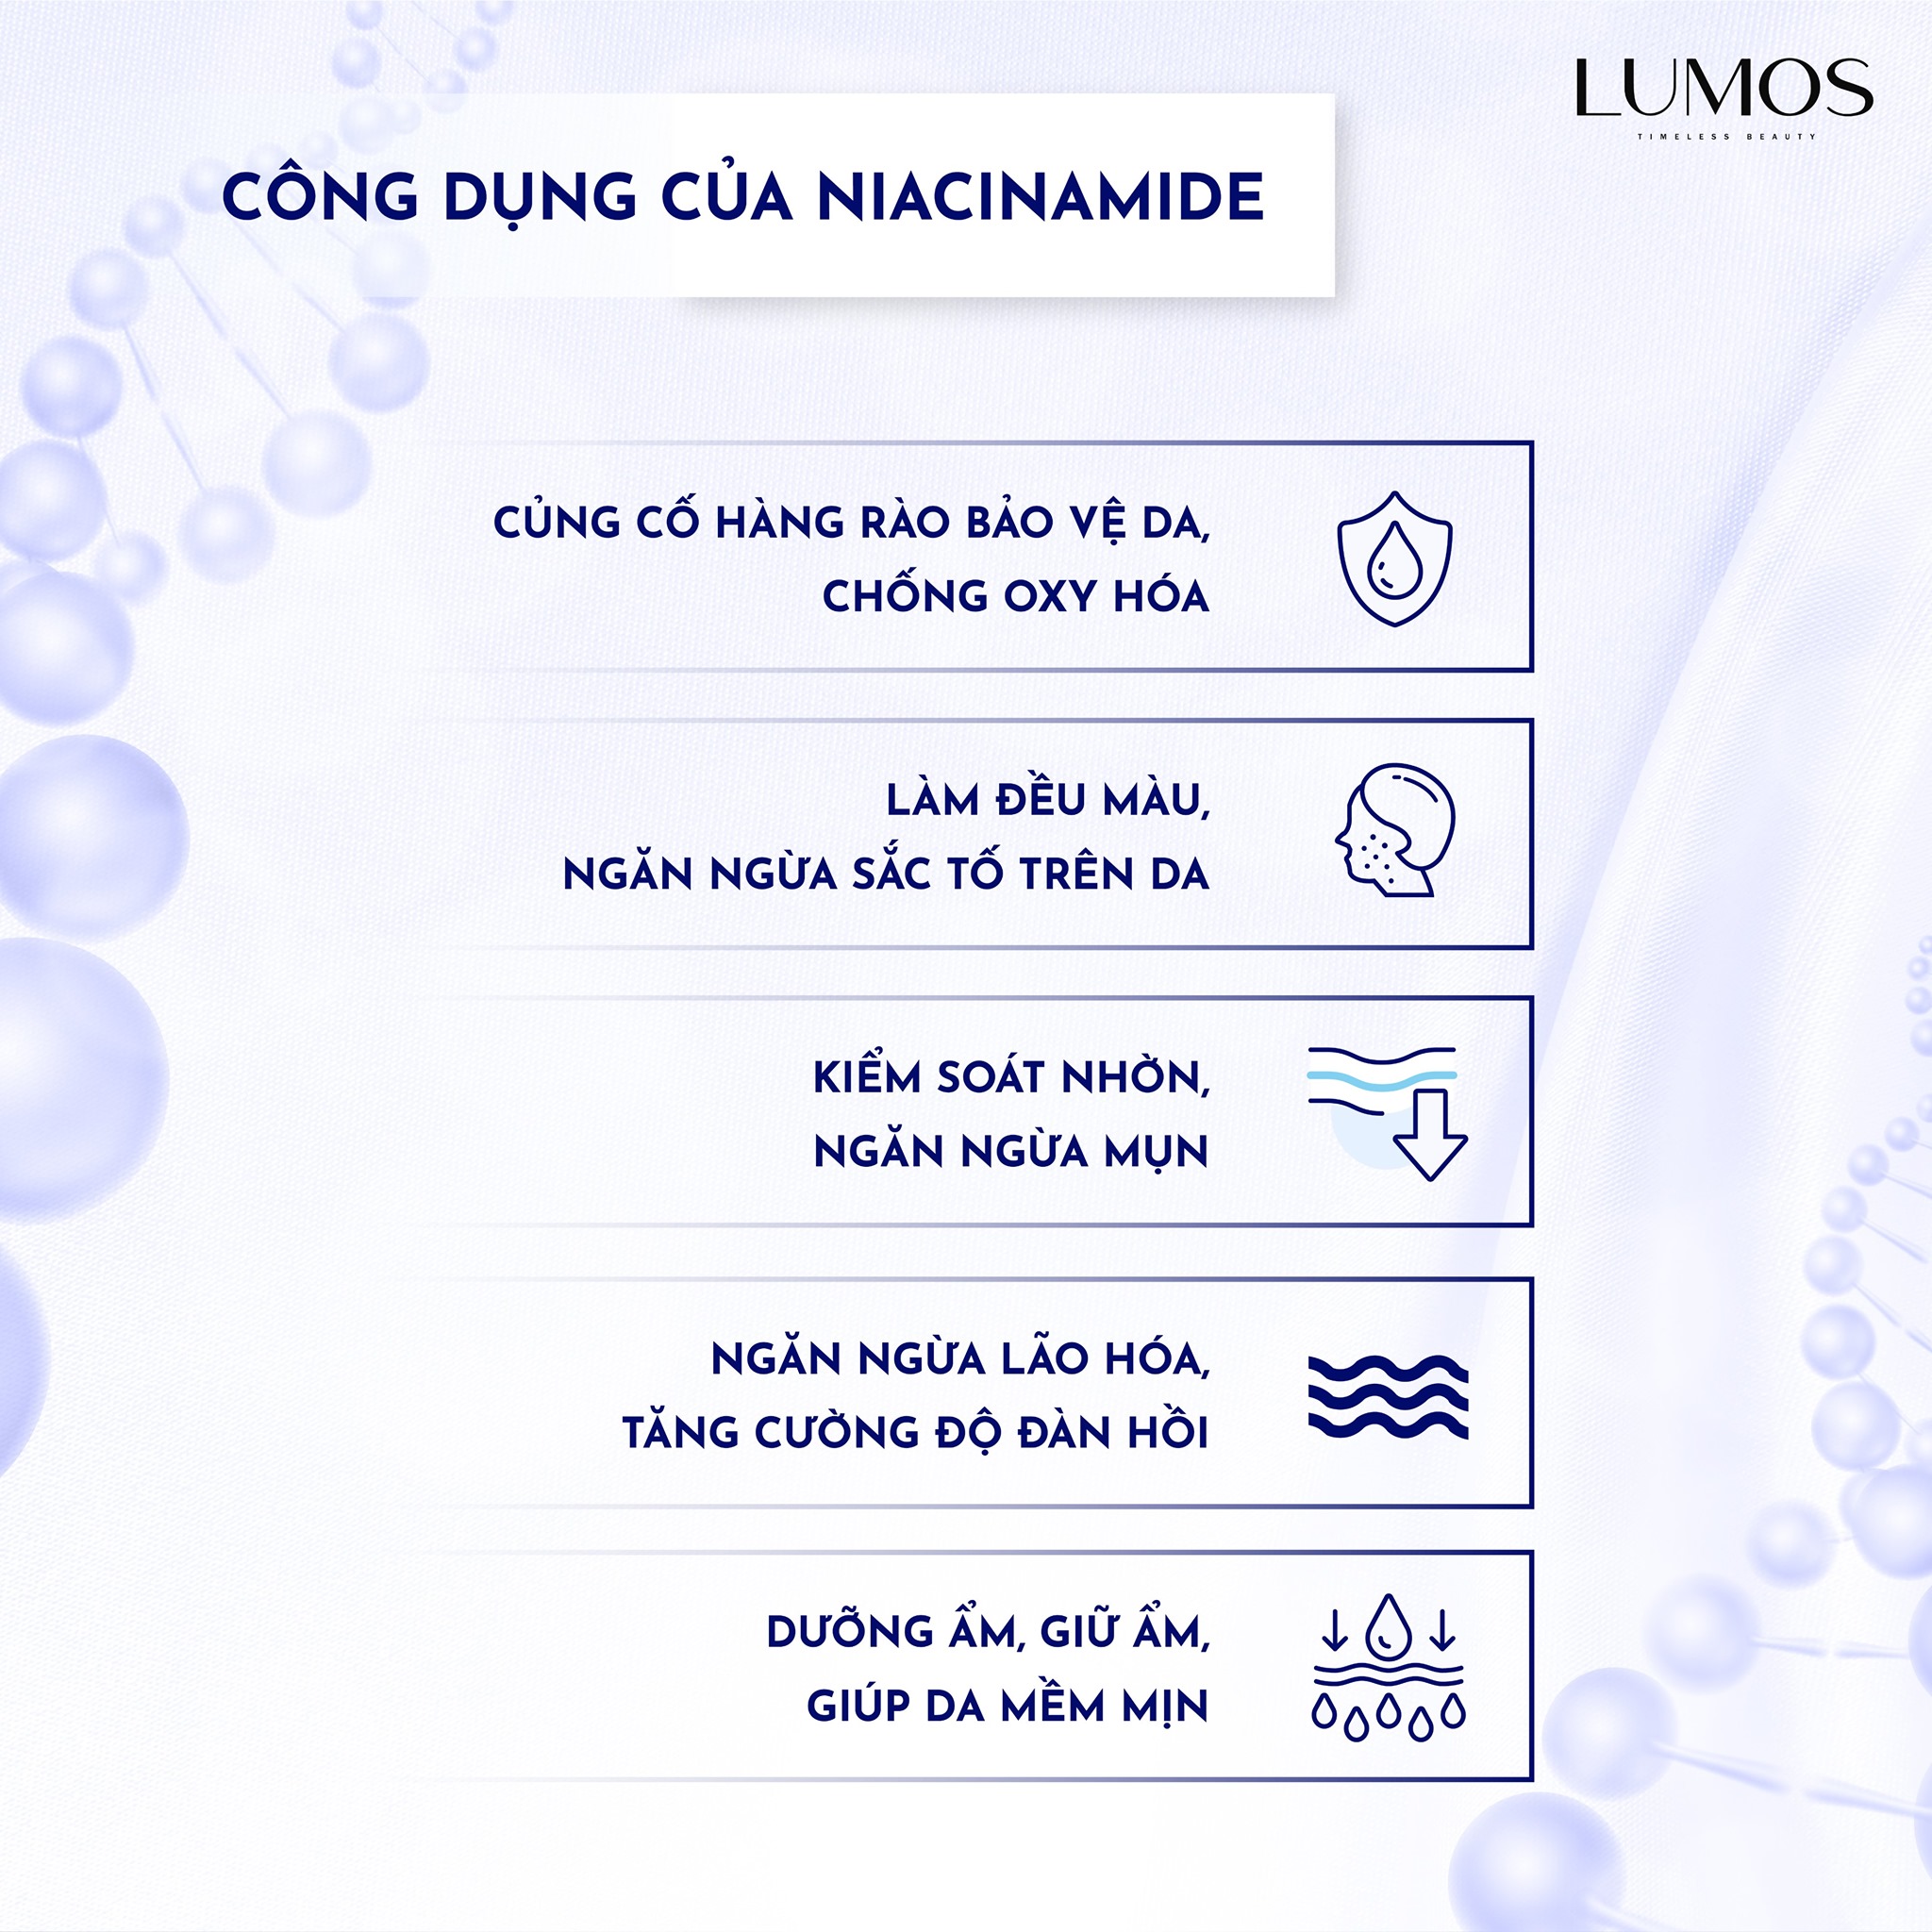 Niacinamide - Thành phần kết tinh nên bộ sản phẩm Lumos